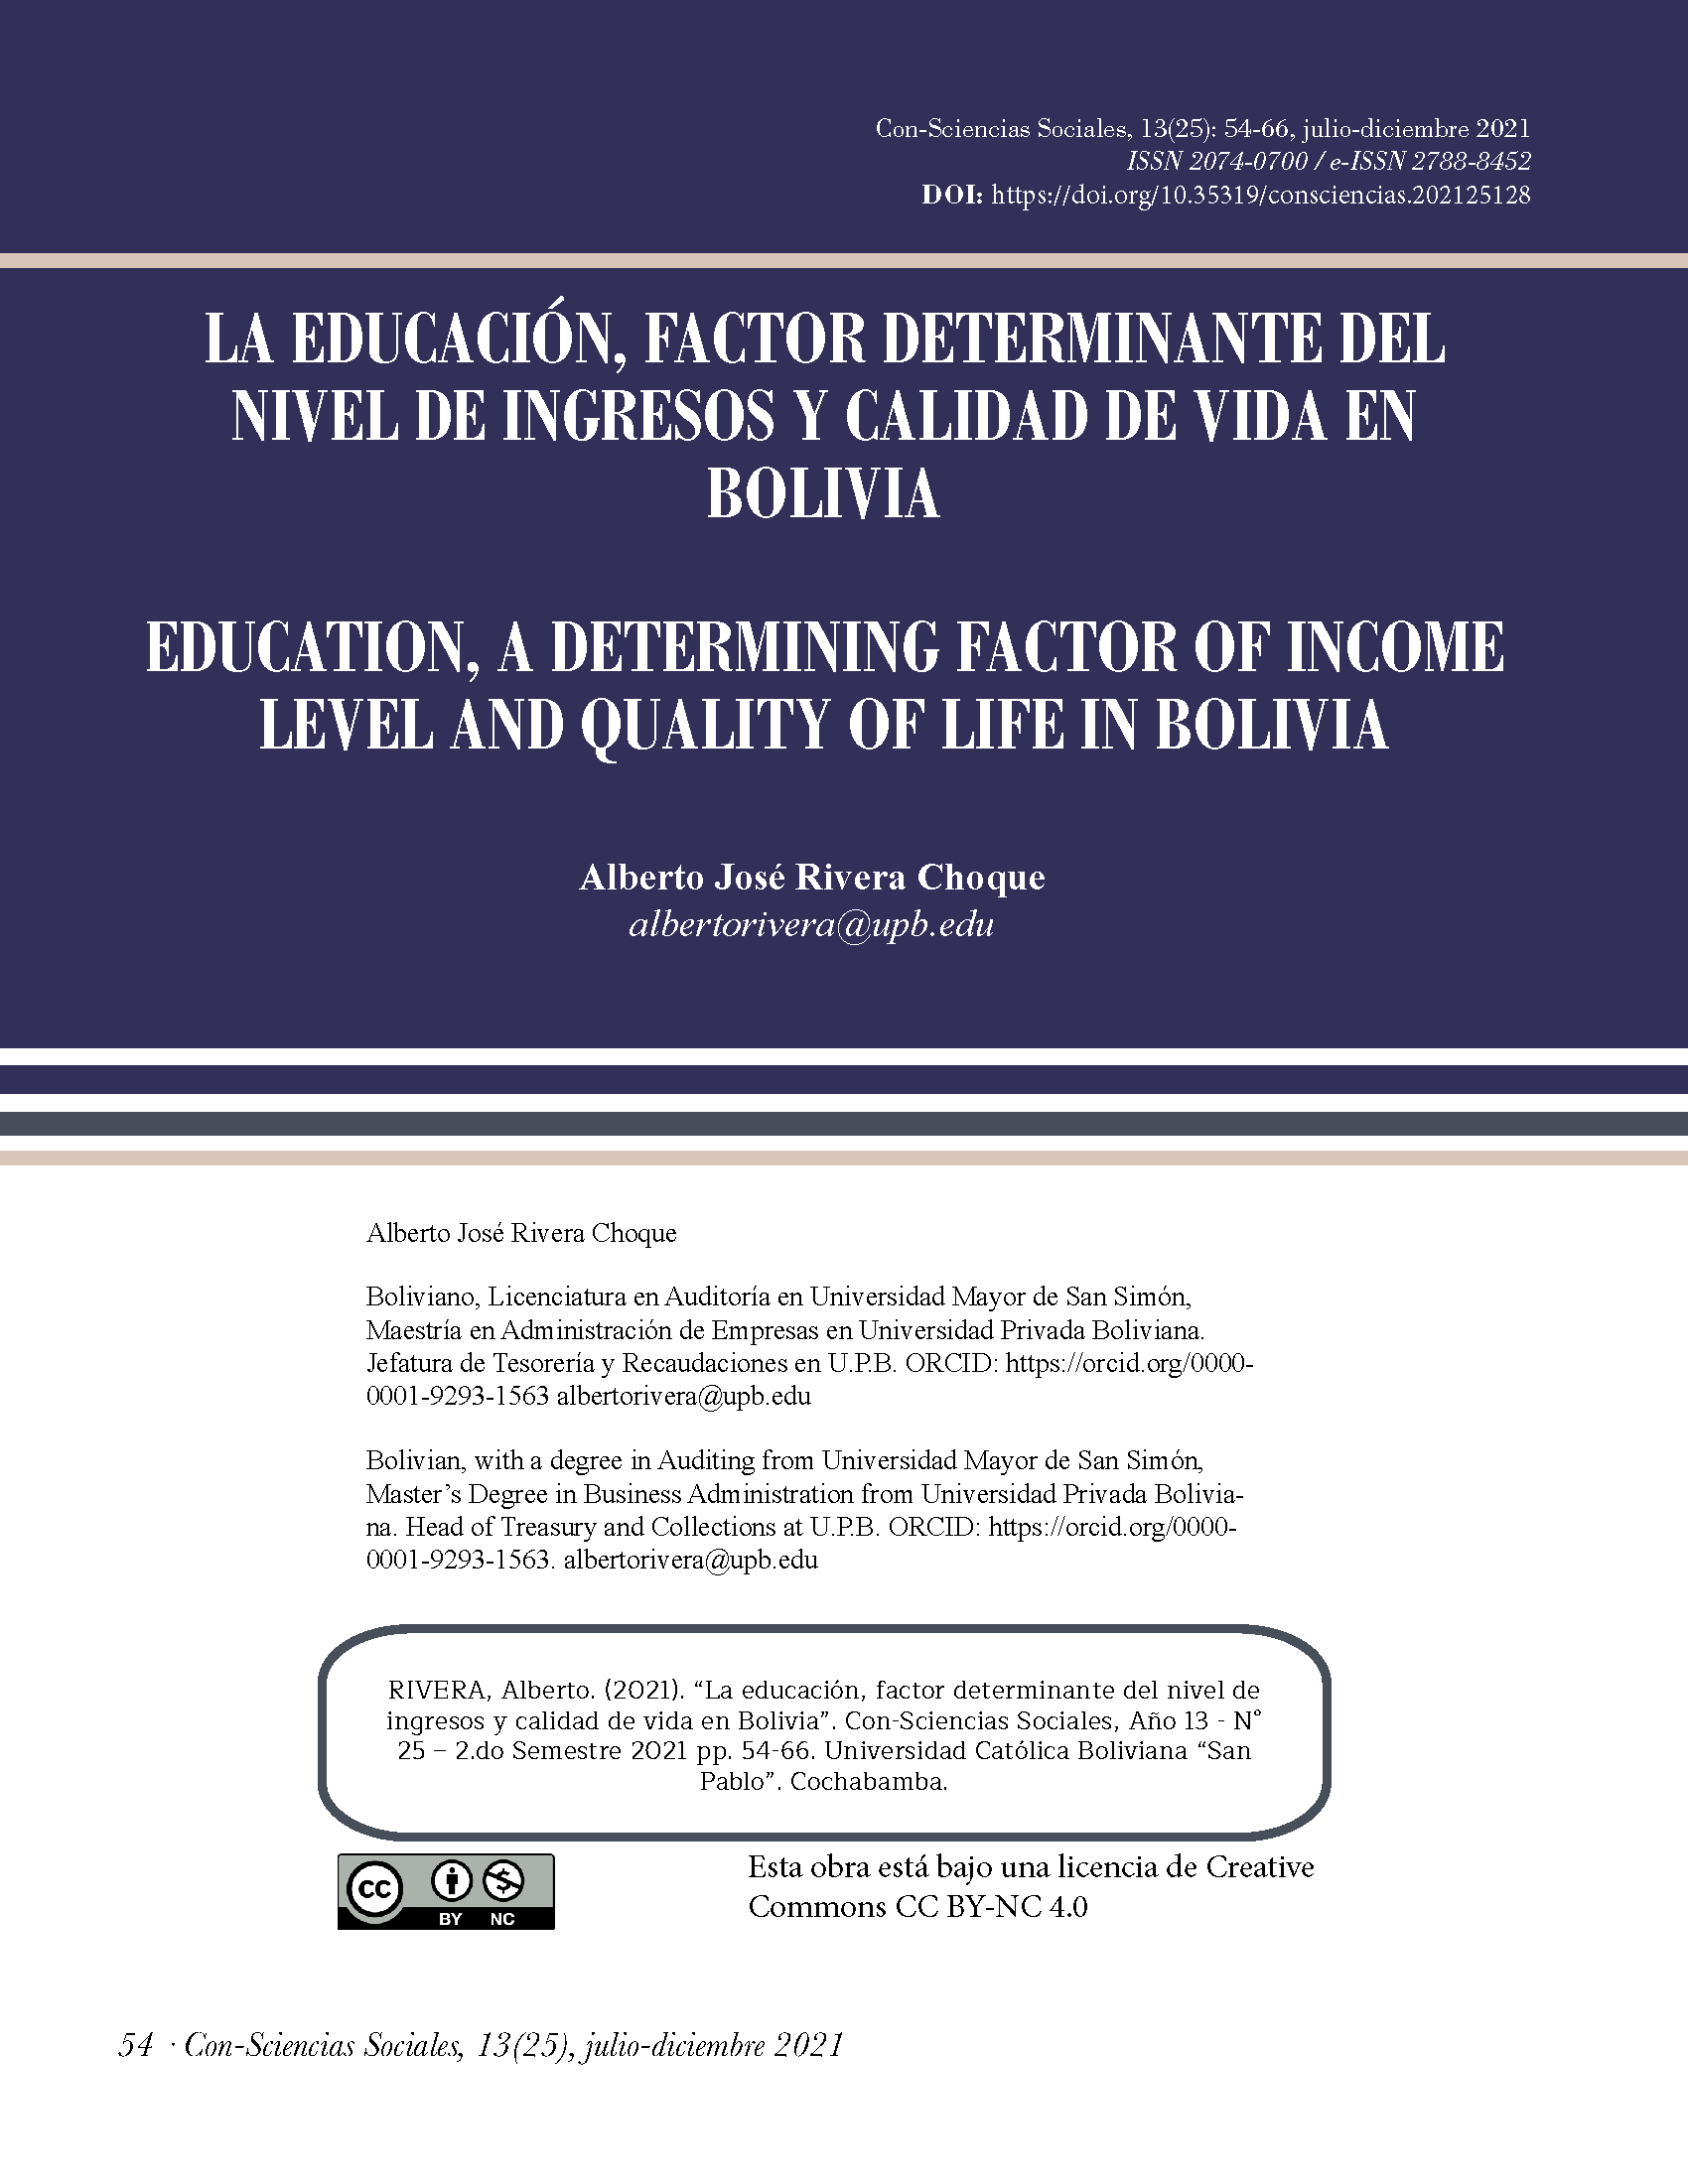 La educación, factor determinante del nivel de ingresos y calidad de vida en Bolivia.